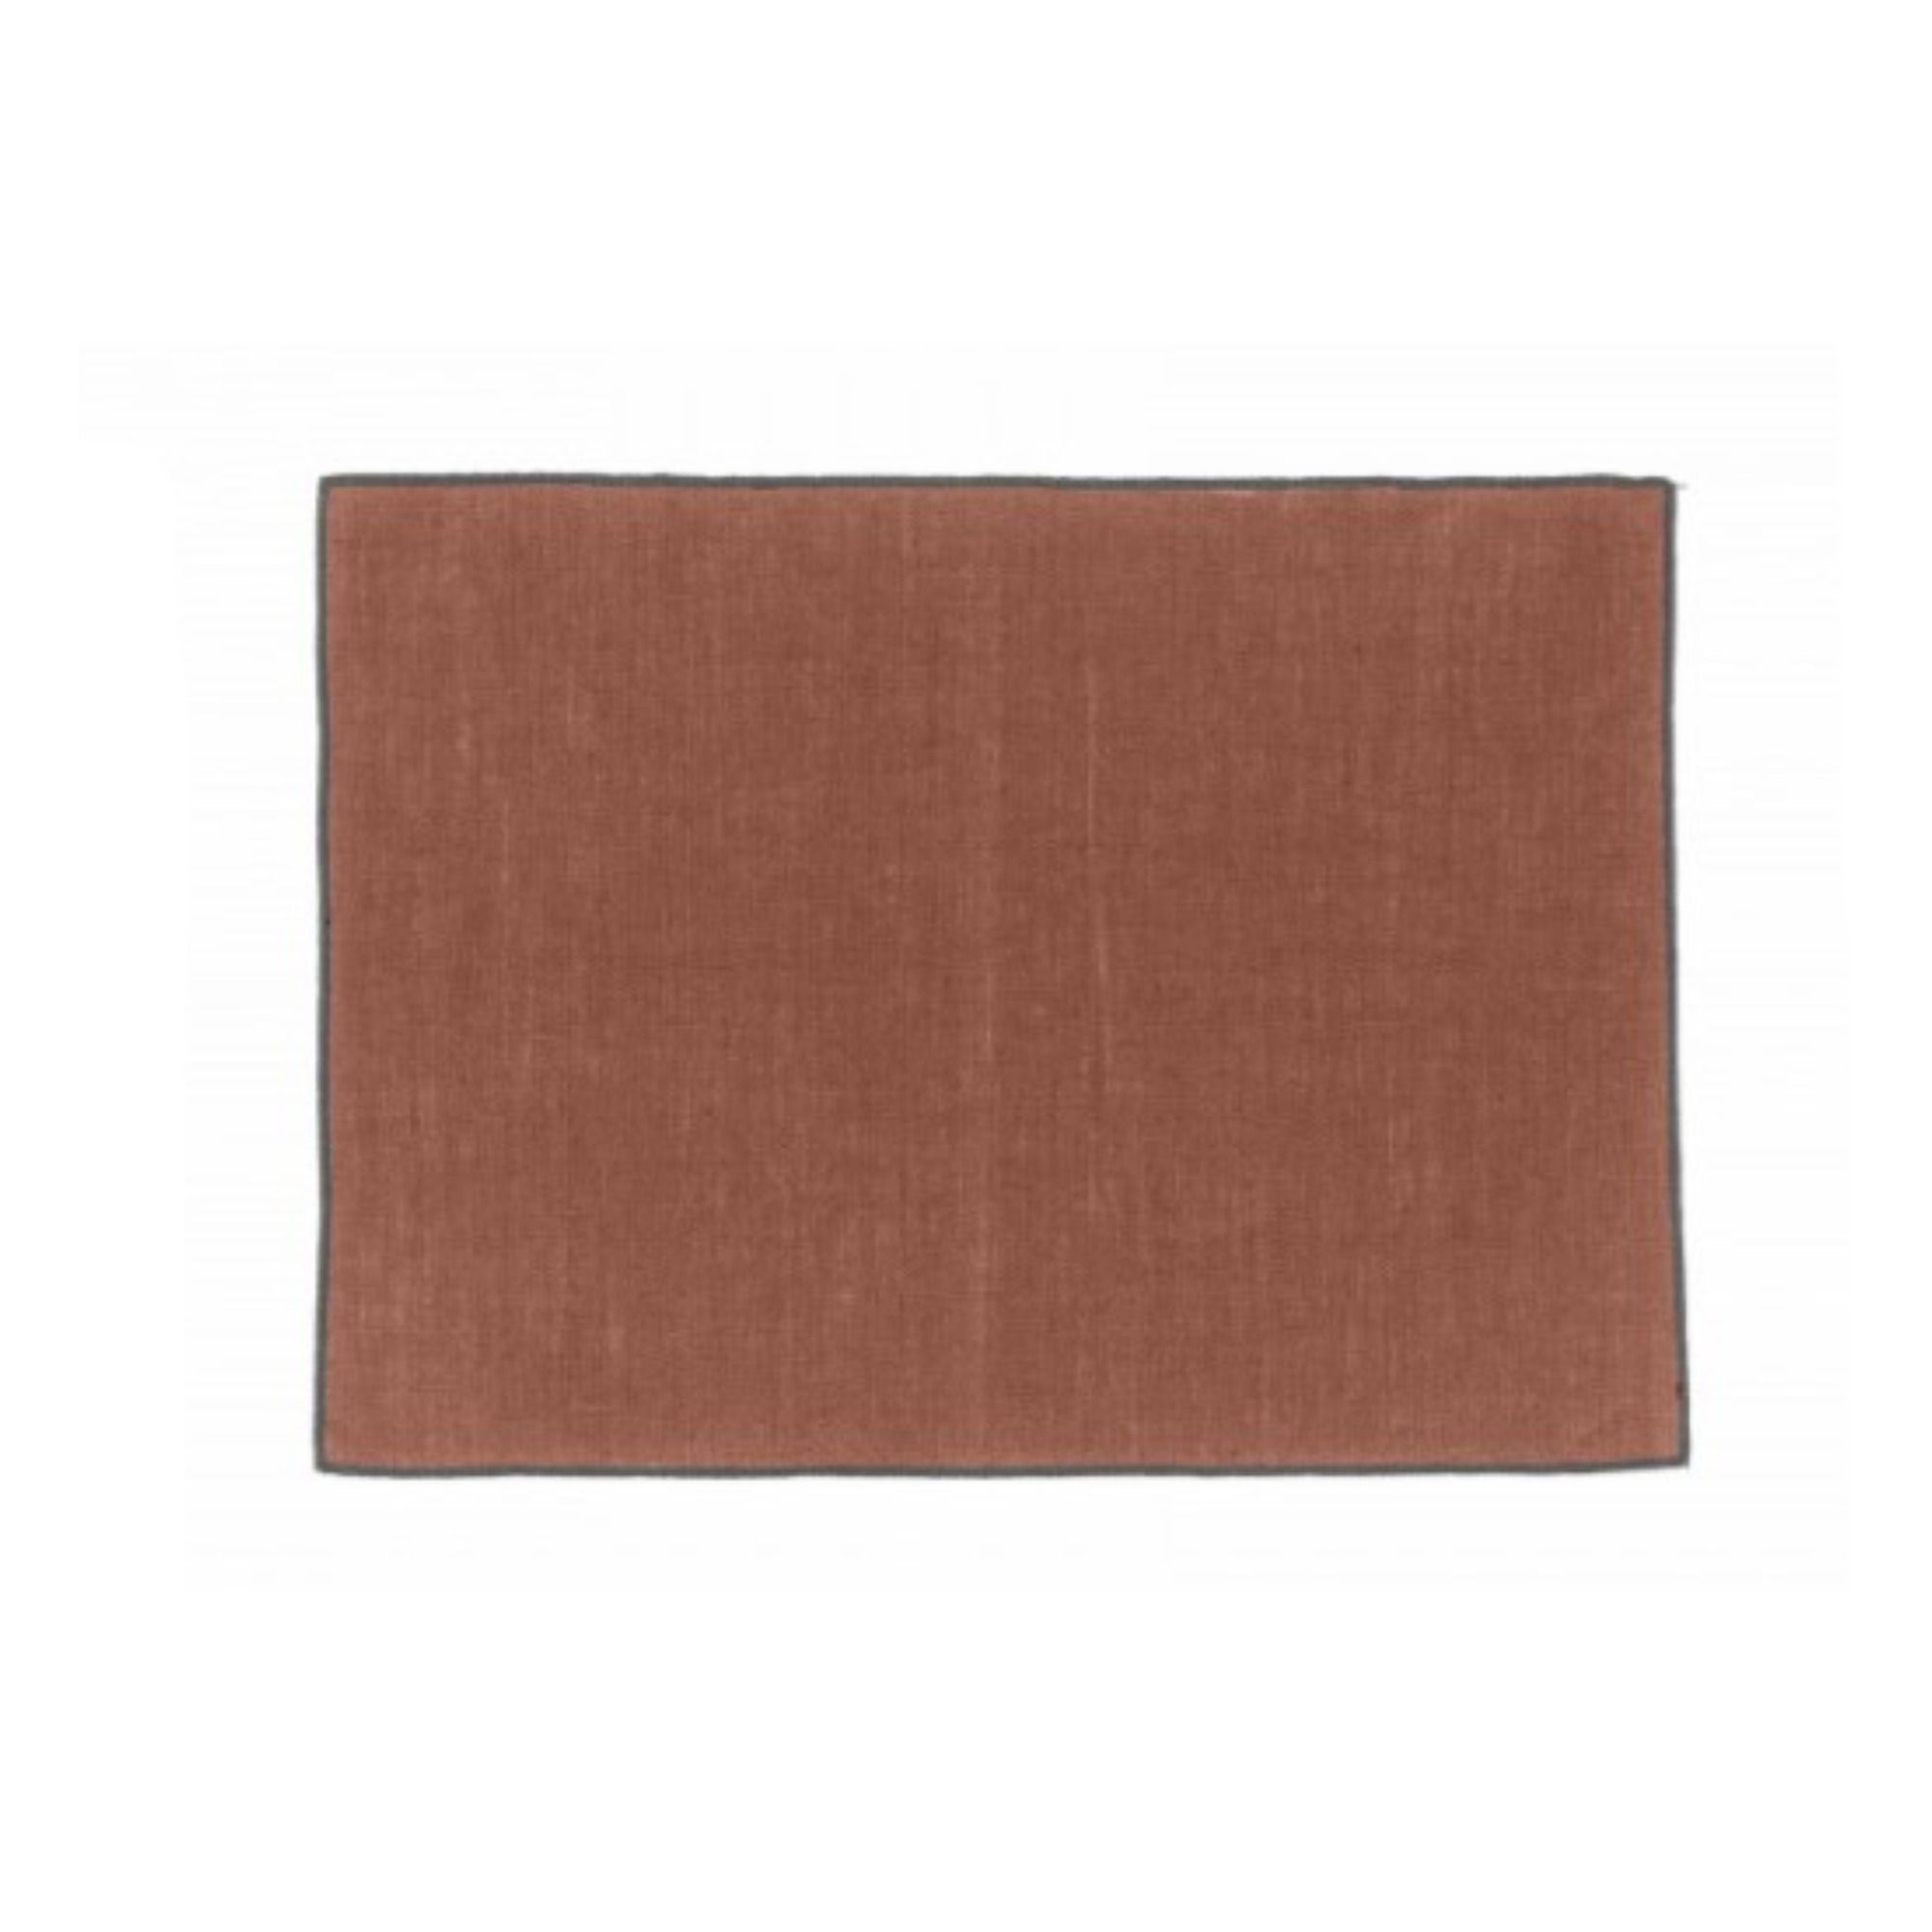 Haomy - Tovaglietta in lino rivestito Borgo - Rosso mattone